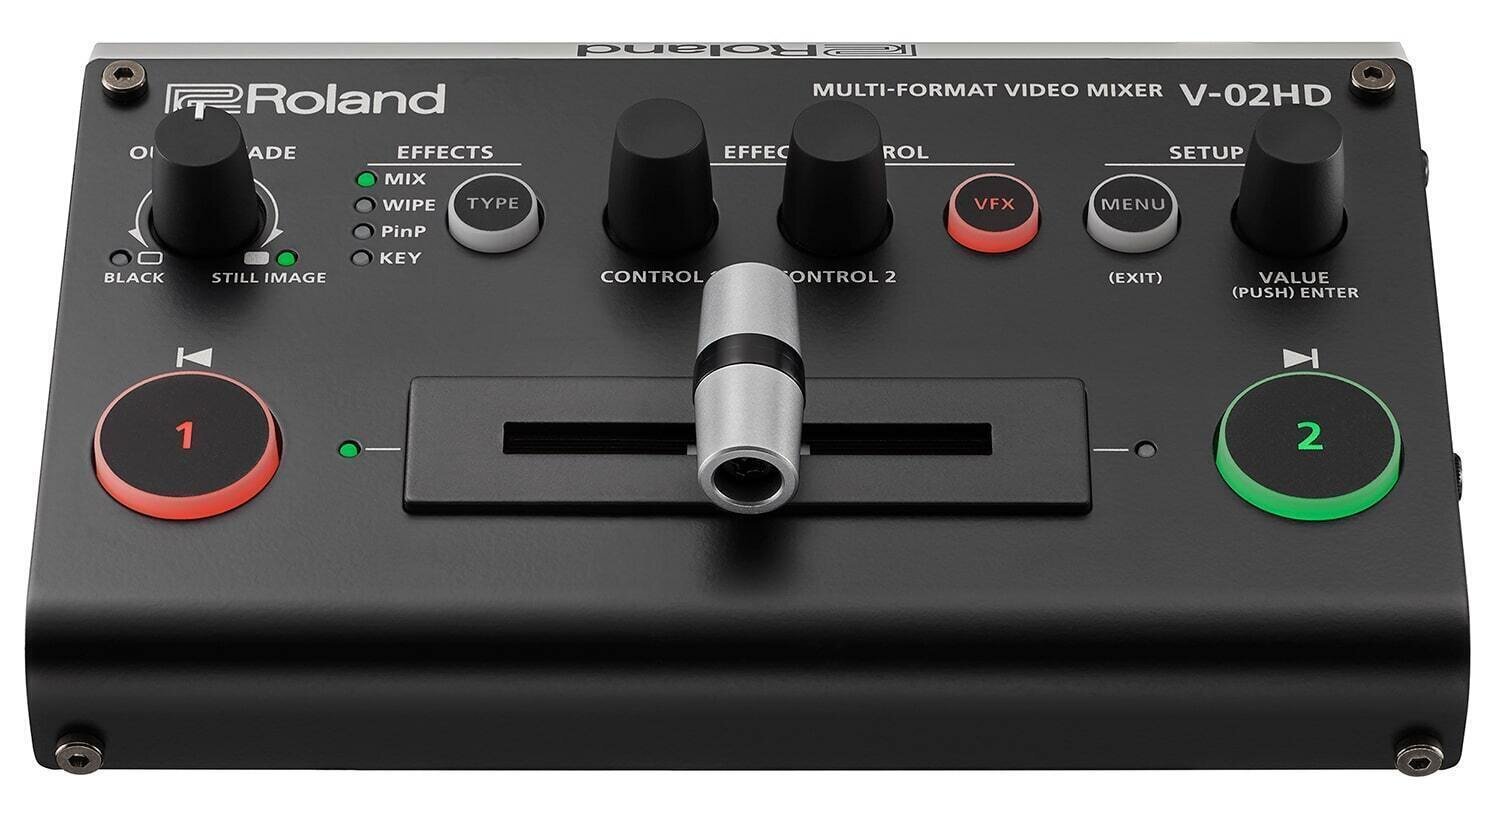 Table de Mixage Vidéo Roland V-02HD